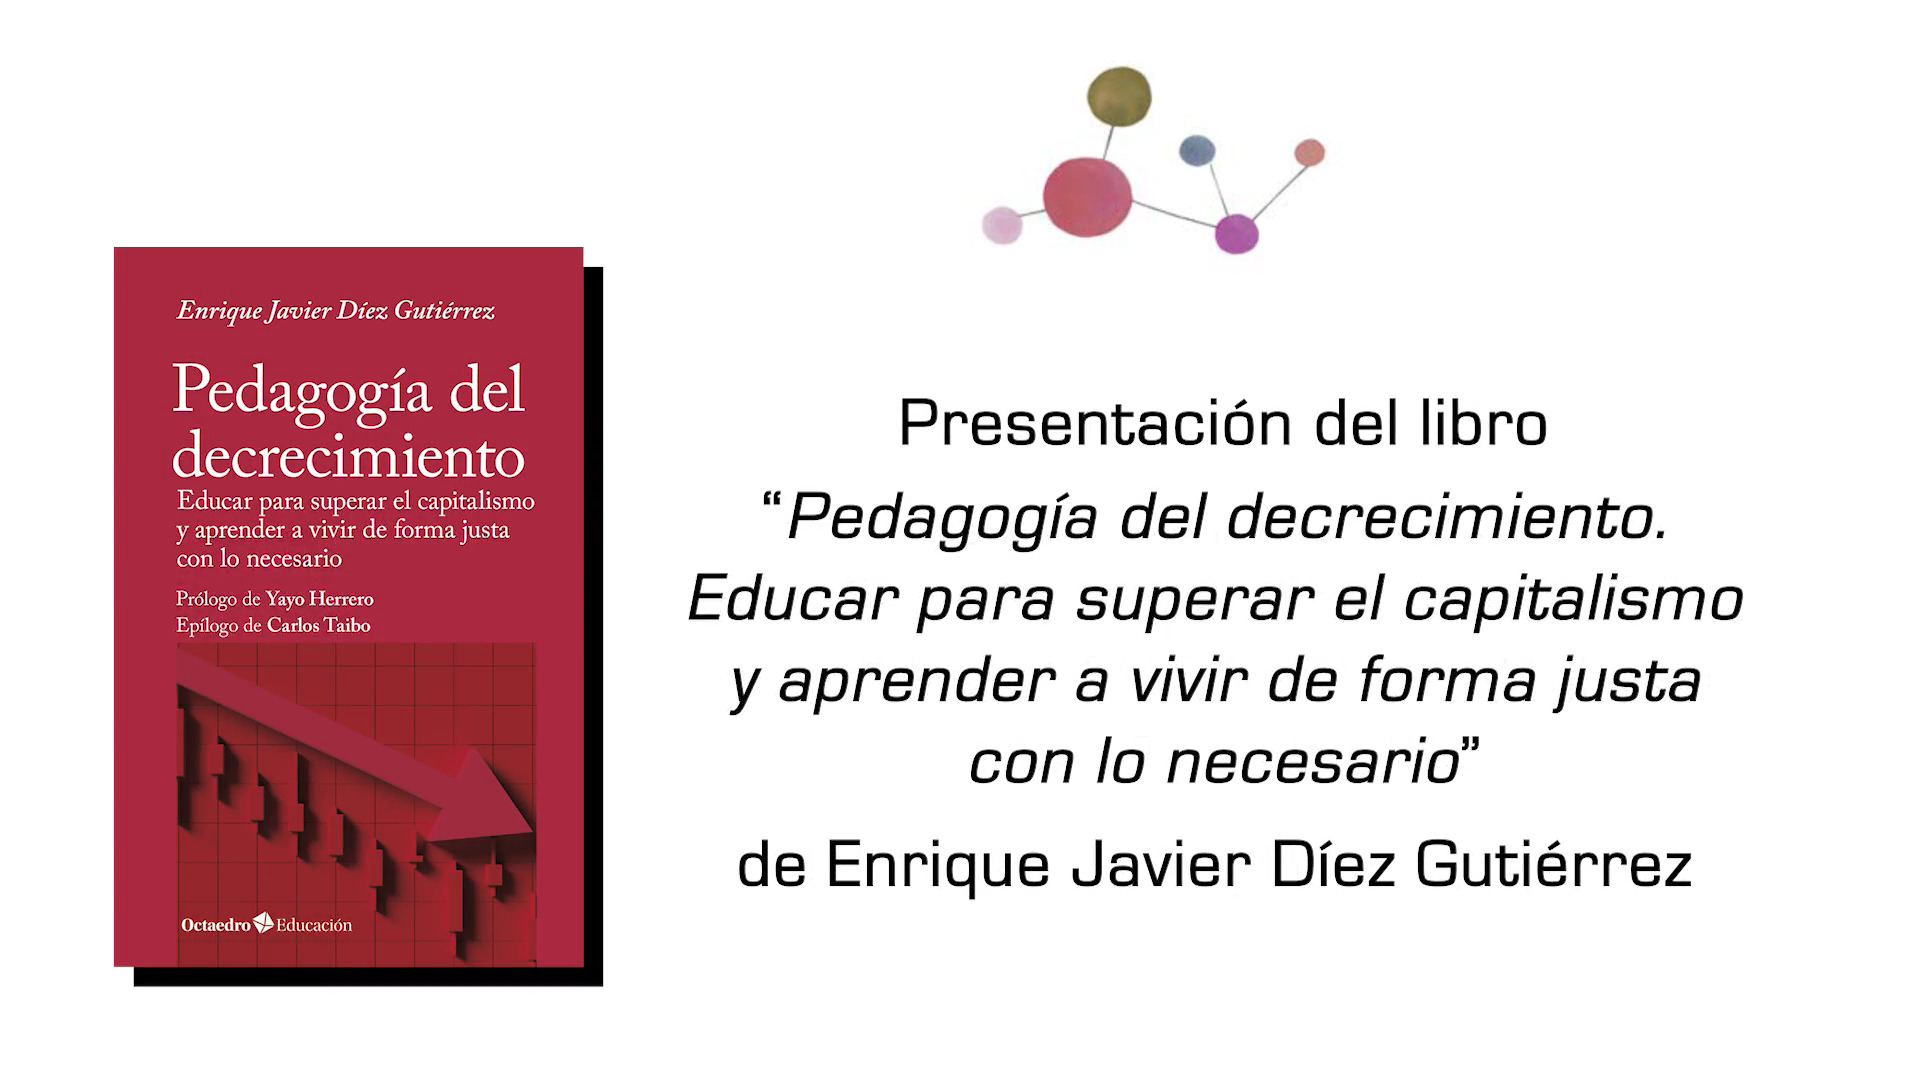 Presentación del libro: "Pedagogía del decrecimiento"